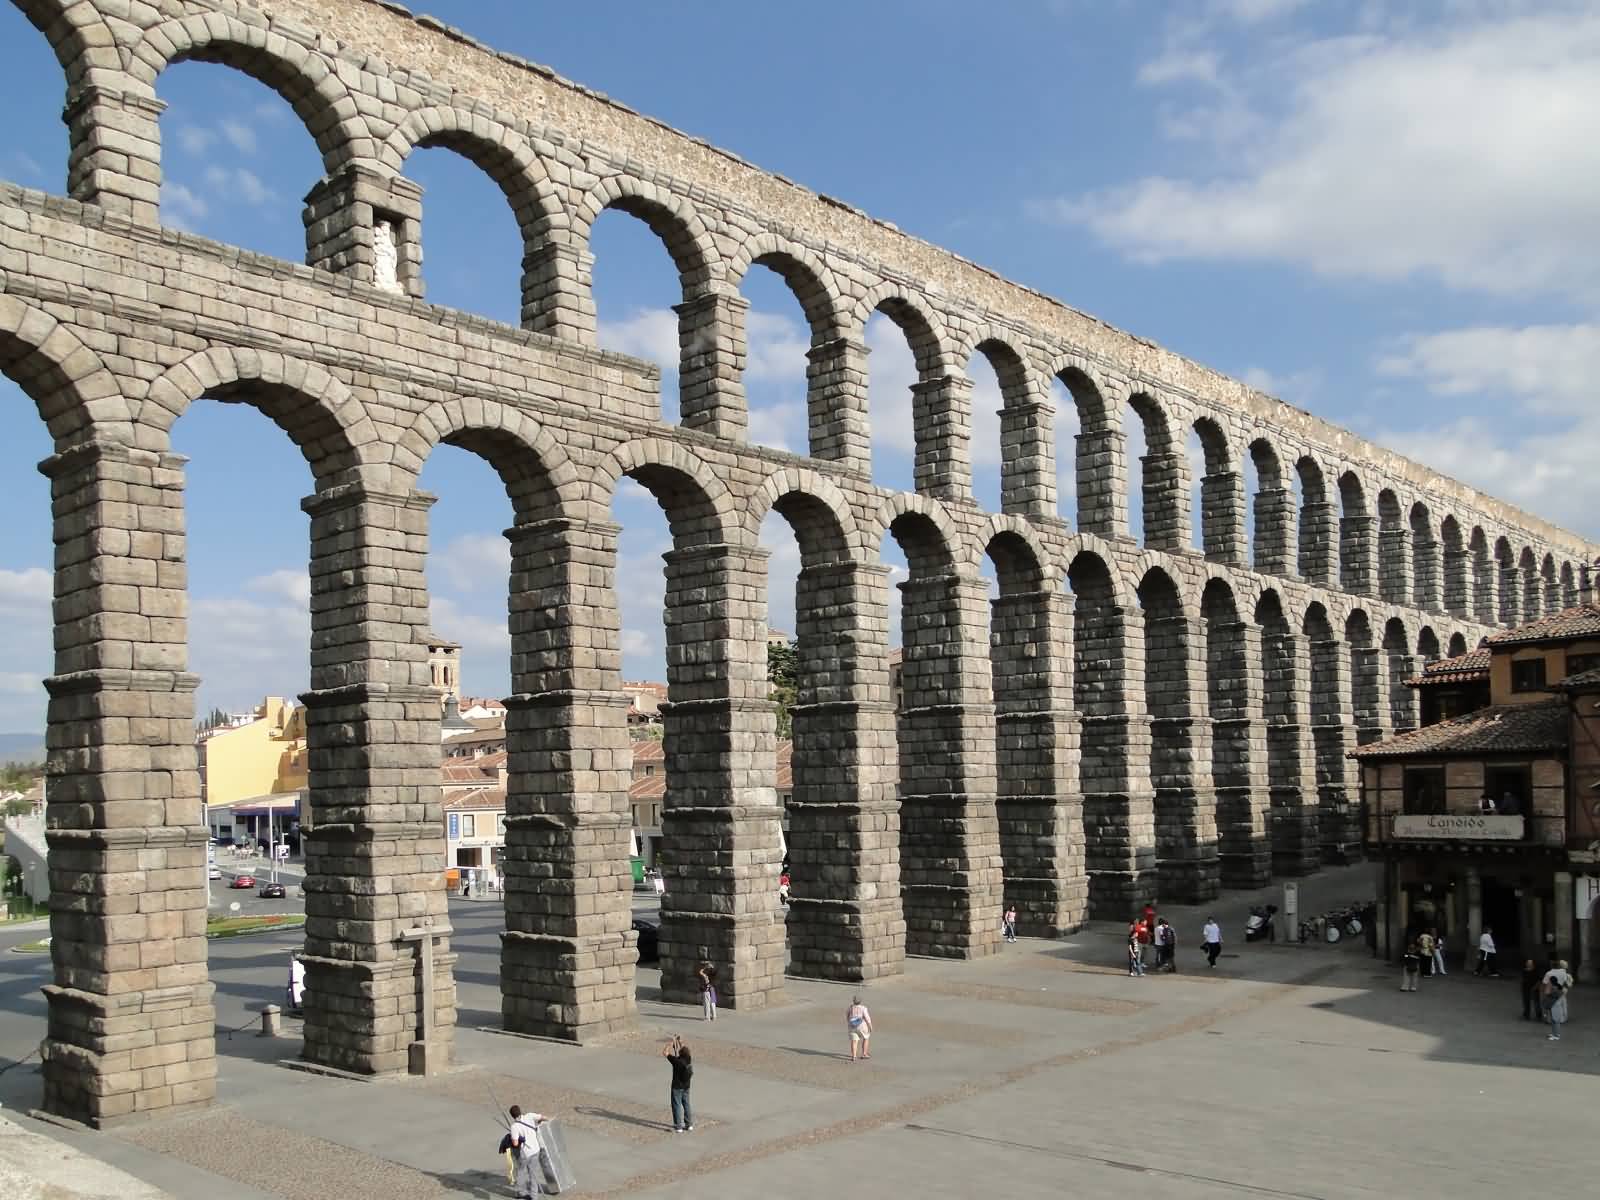 Aqueduct of Segovia View